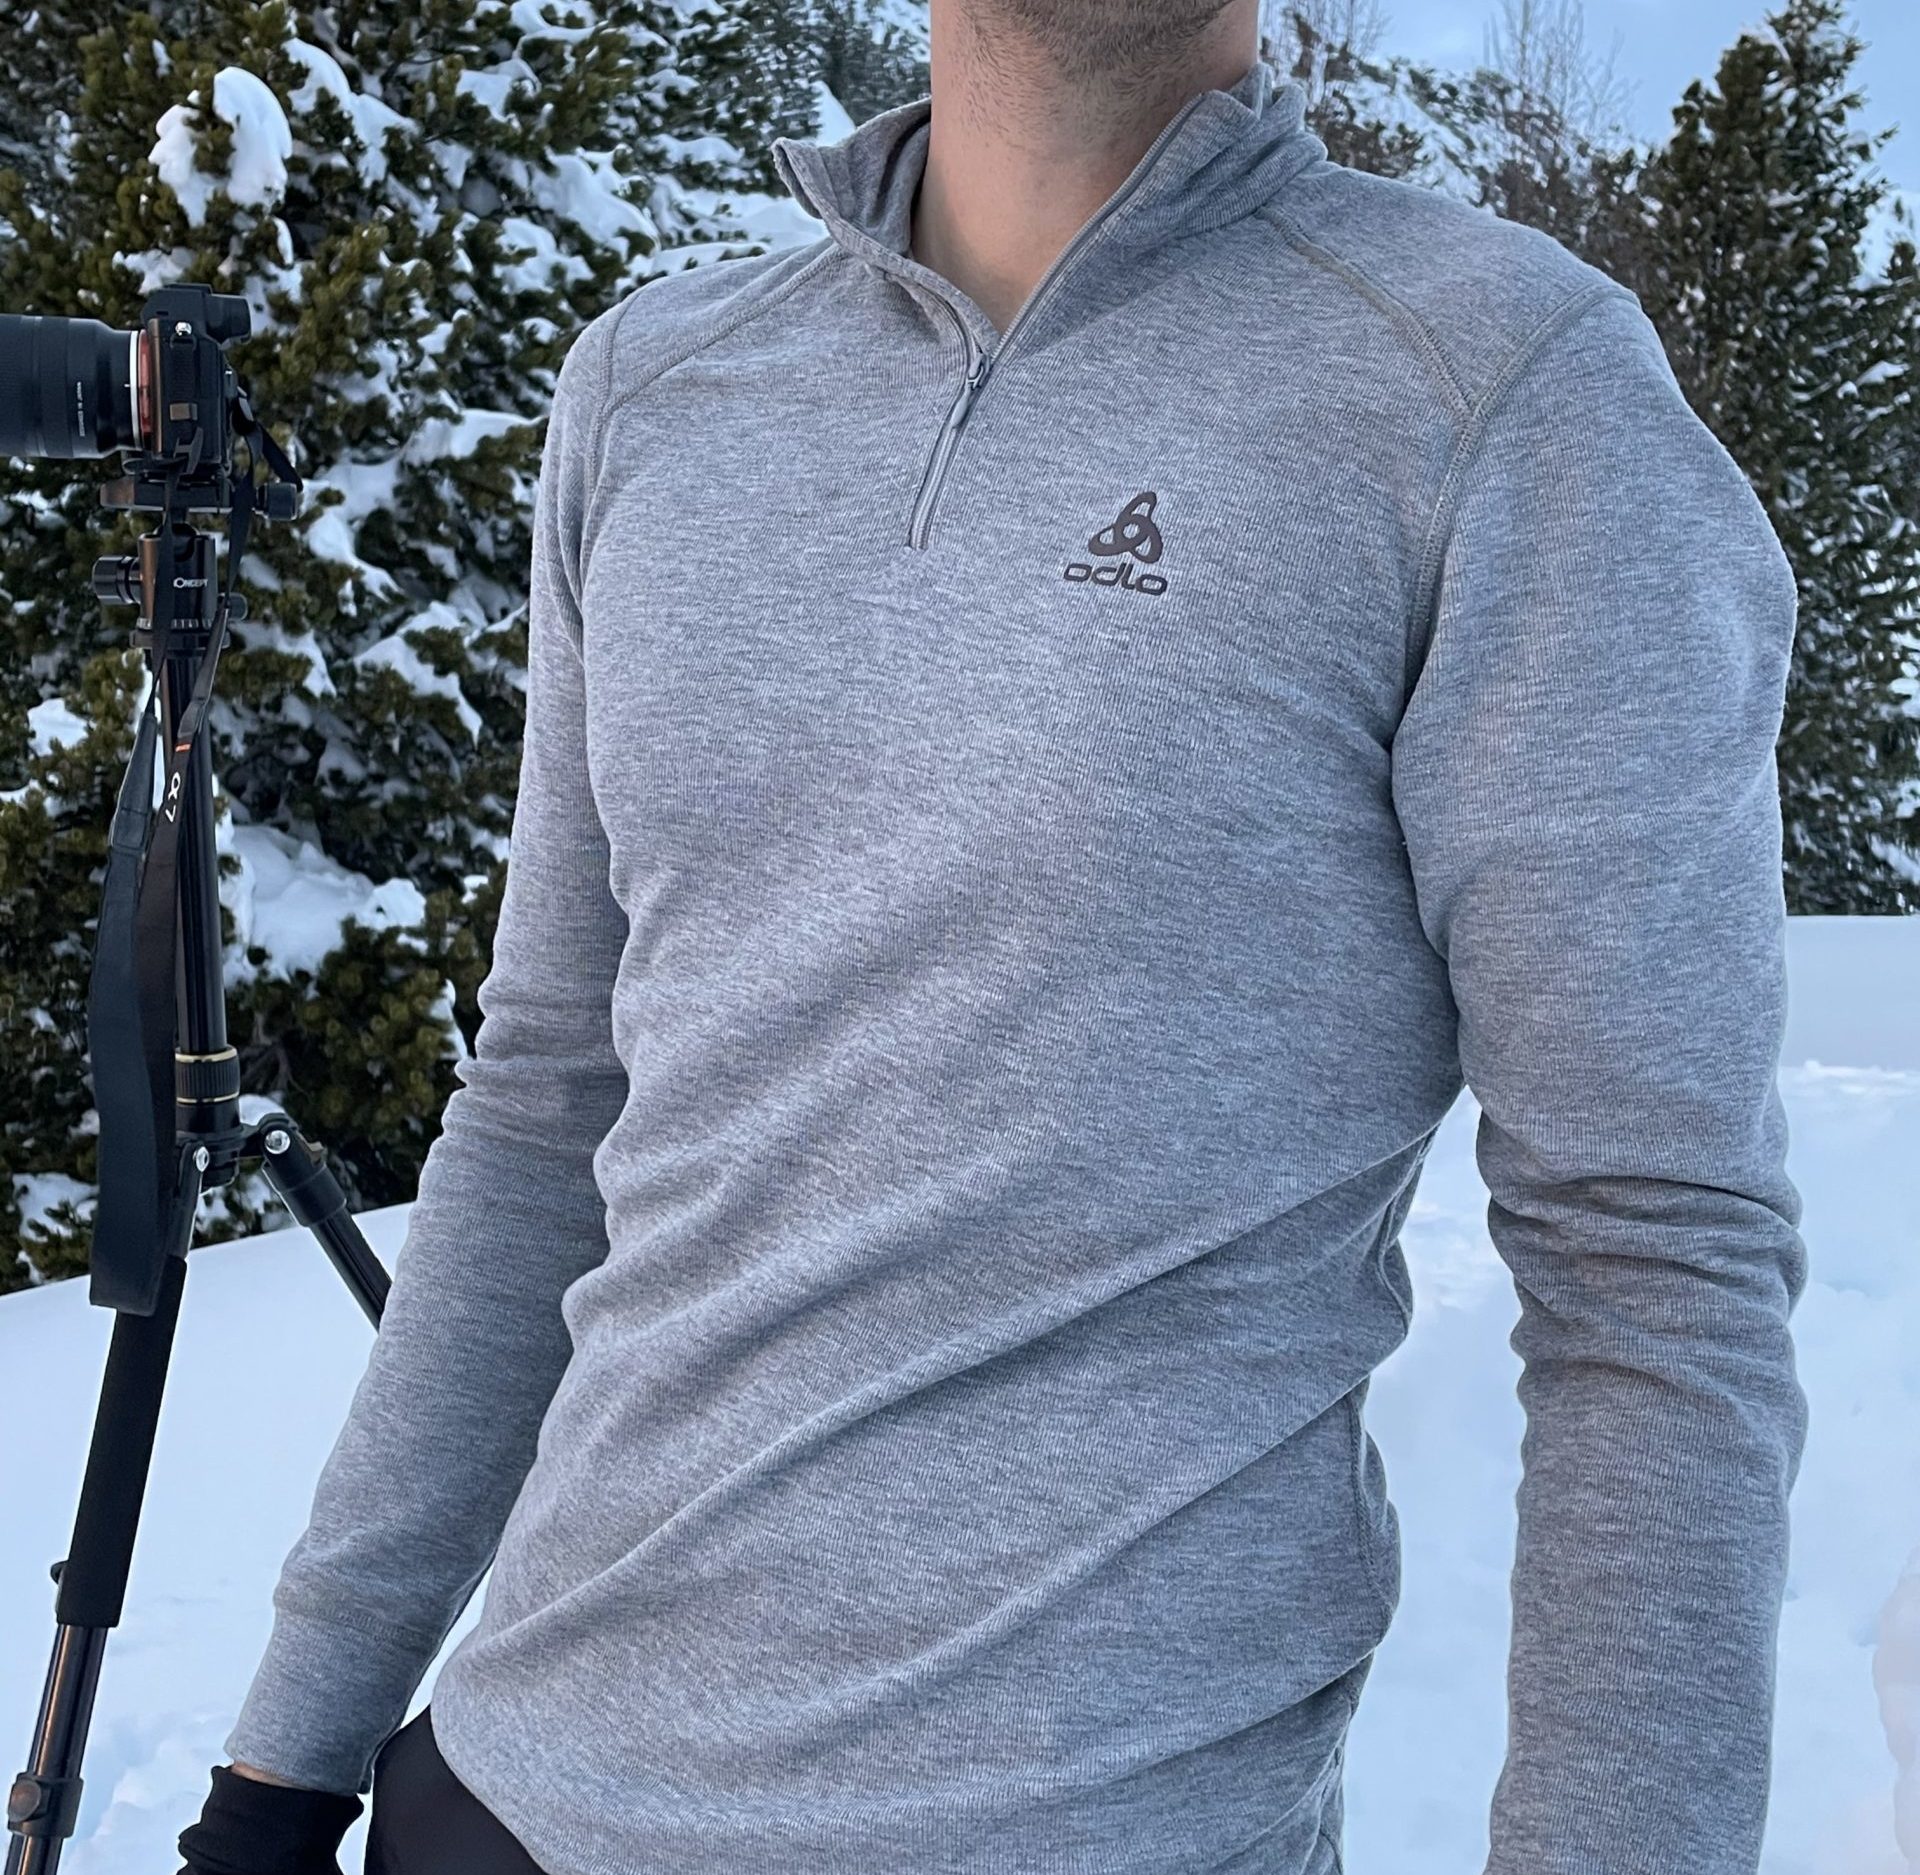 Sous-vêtements thermiques et techniques ski